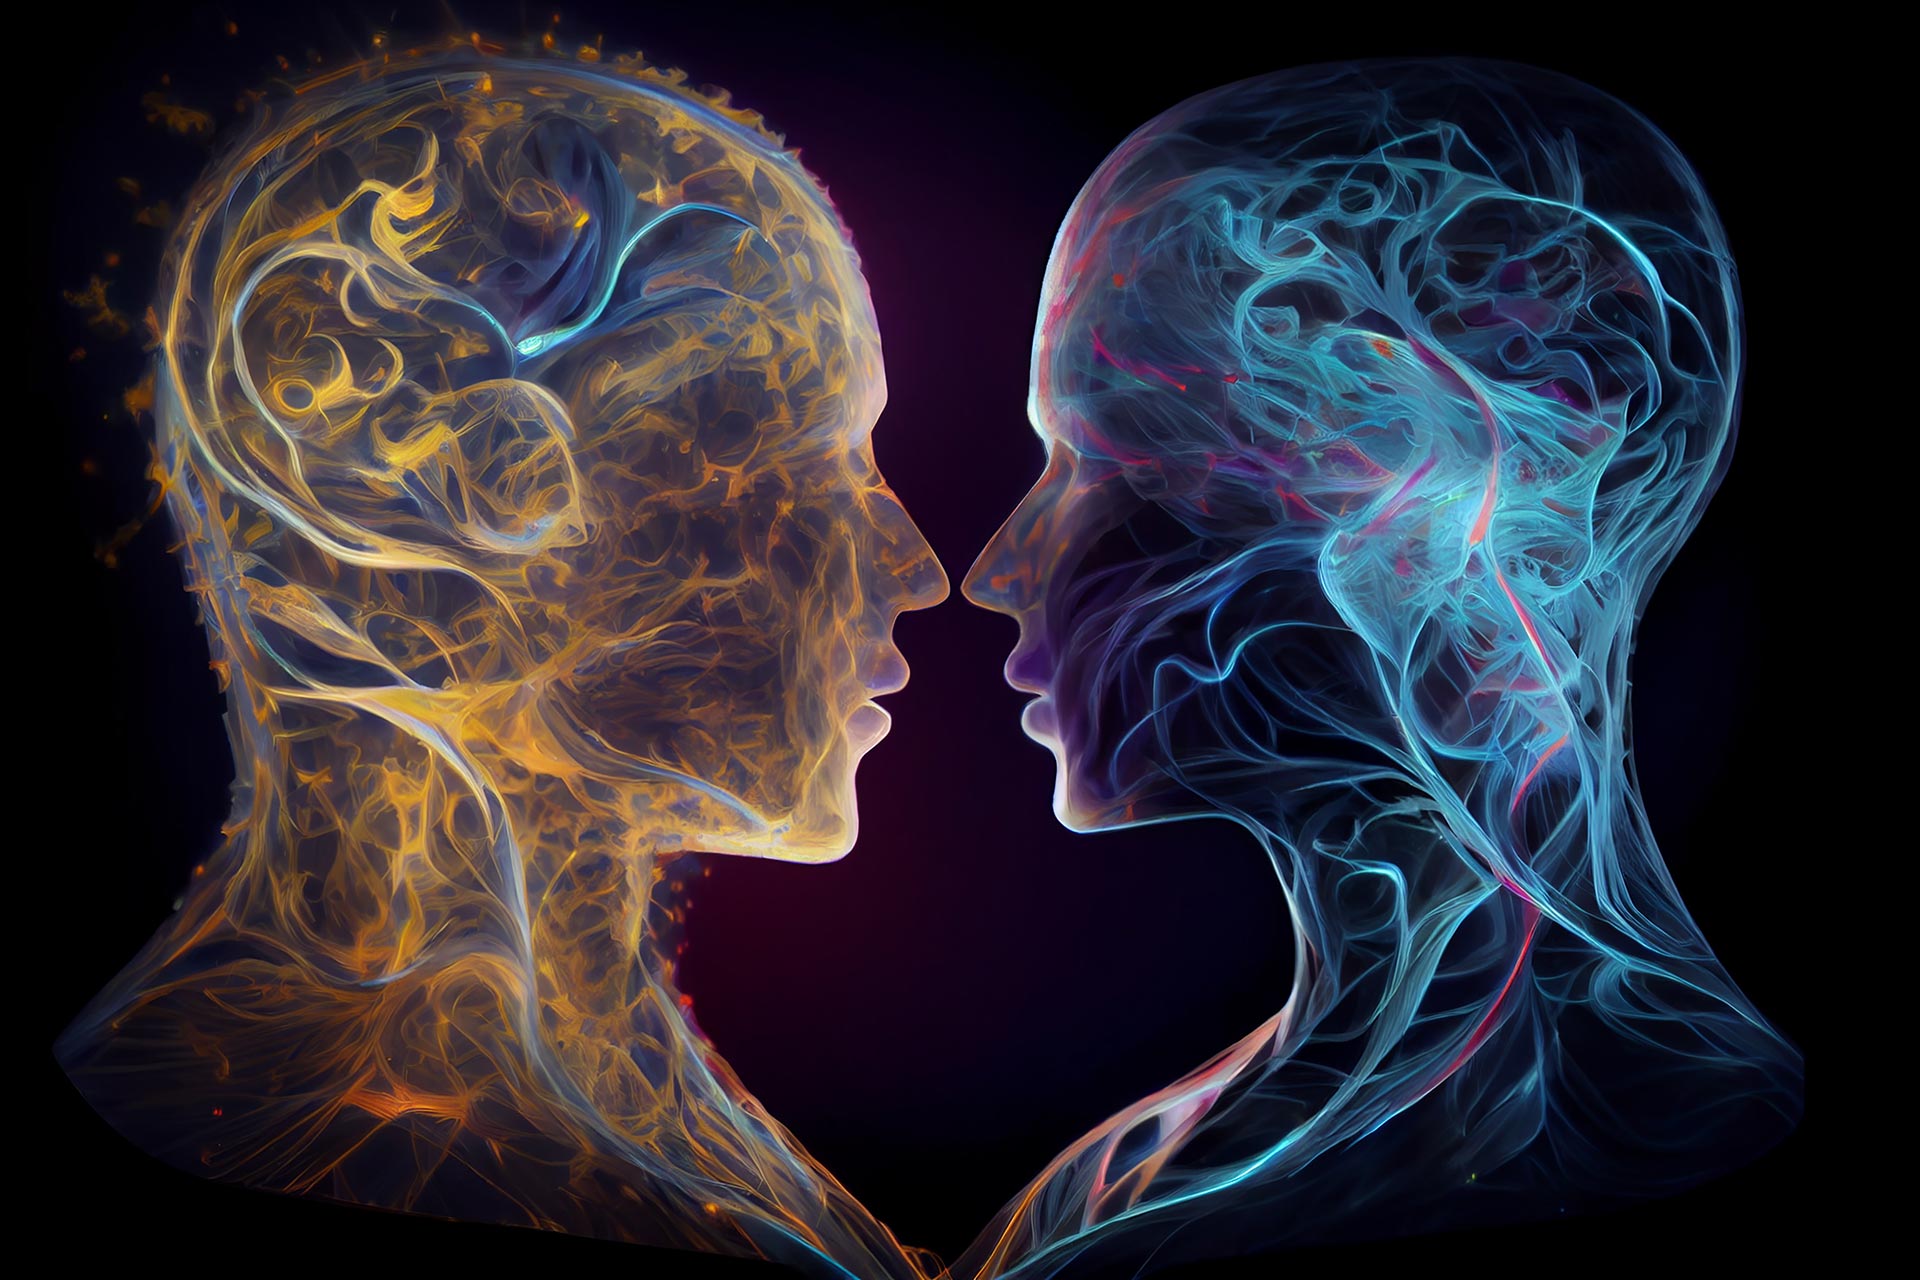 L’imagerie cérébrale pour montrer des différences entre les cerveaux mâles et femelles ?